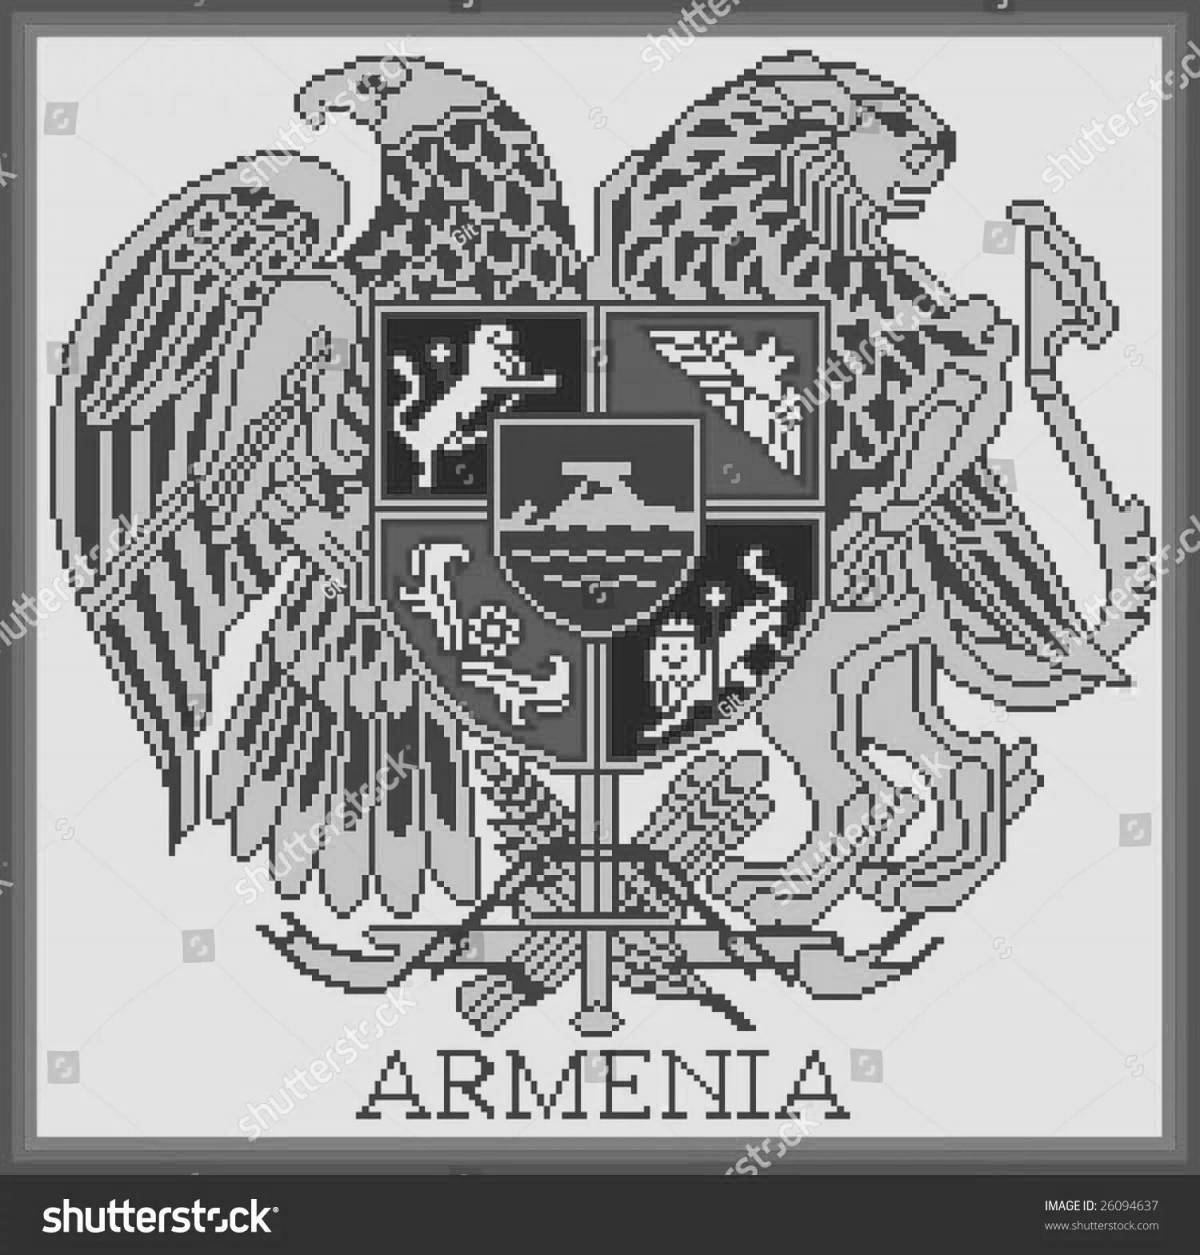 Grand coloring coat of arms of armenia